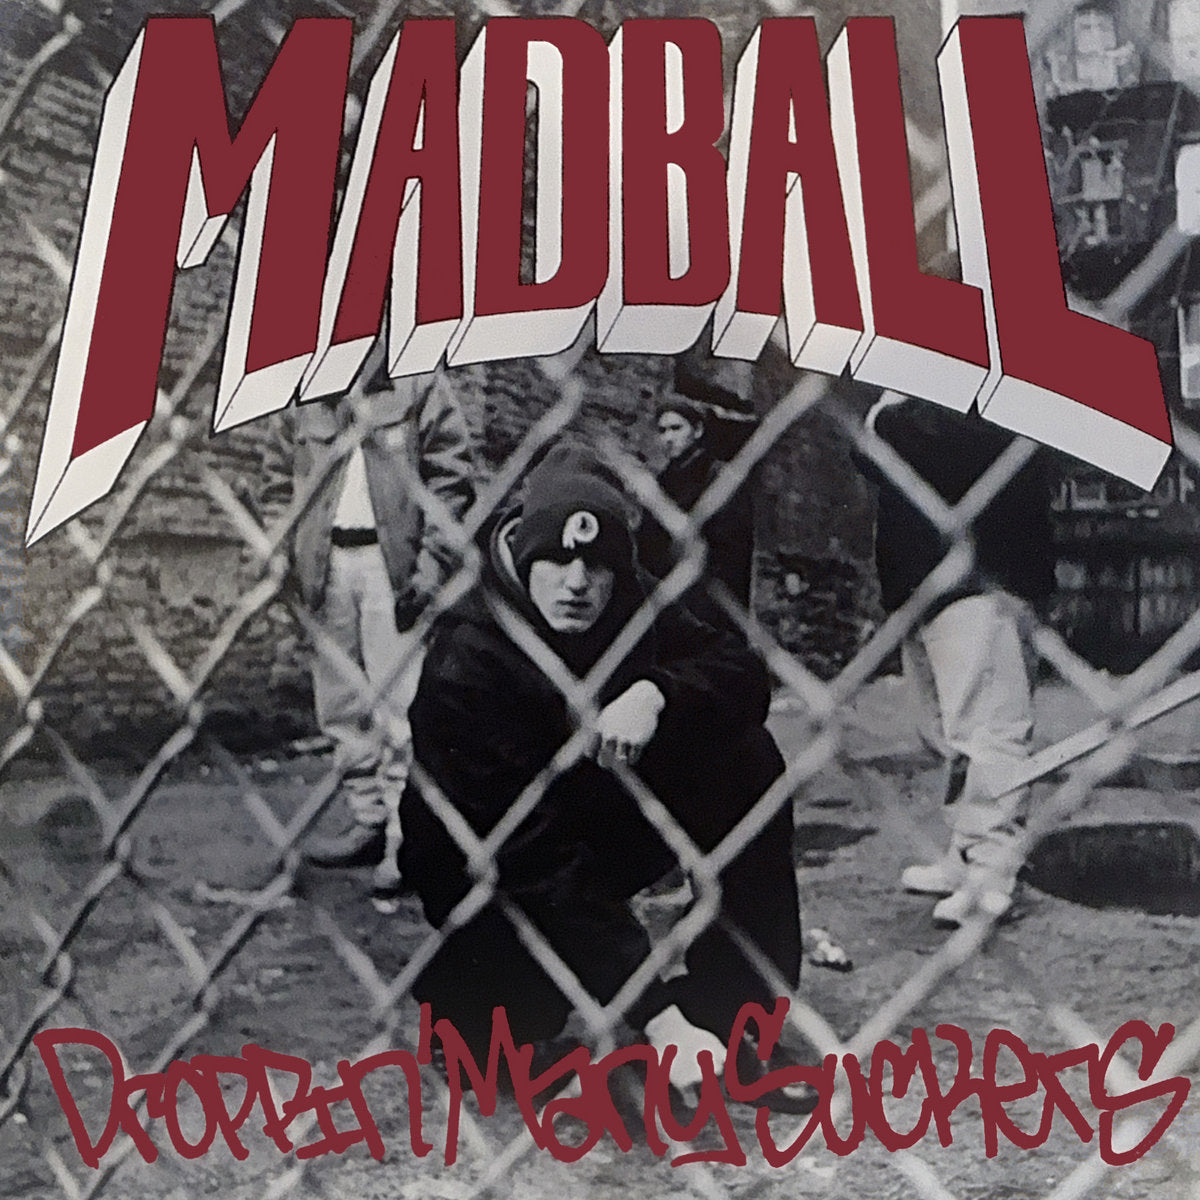 Madball "Droppin' Many Suckers" 7" Vinyl